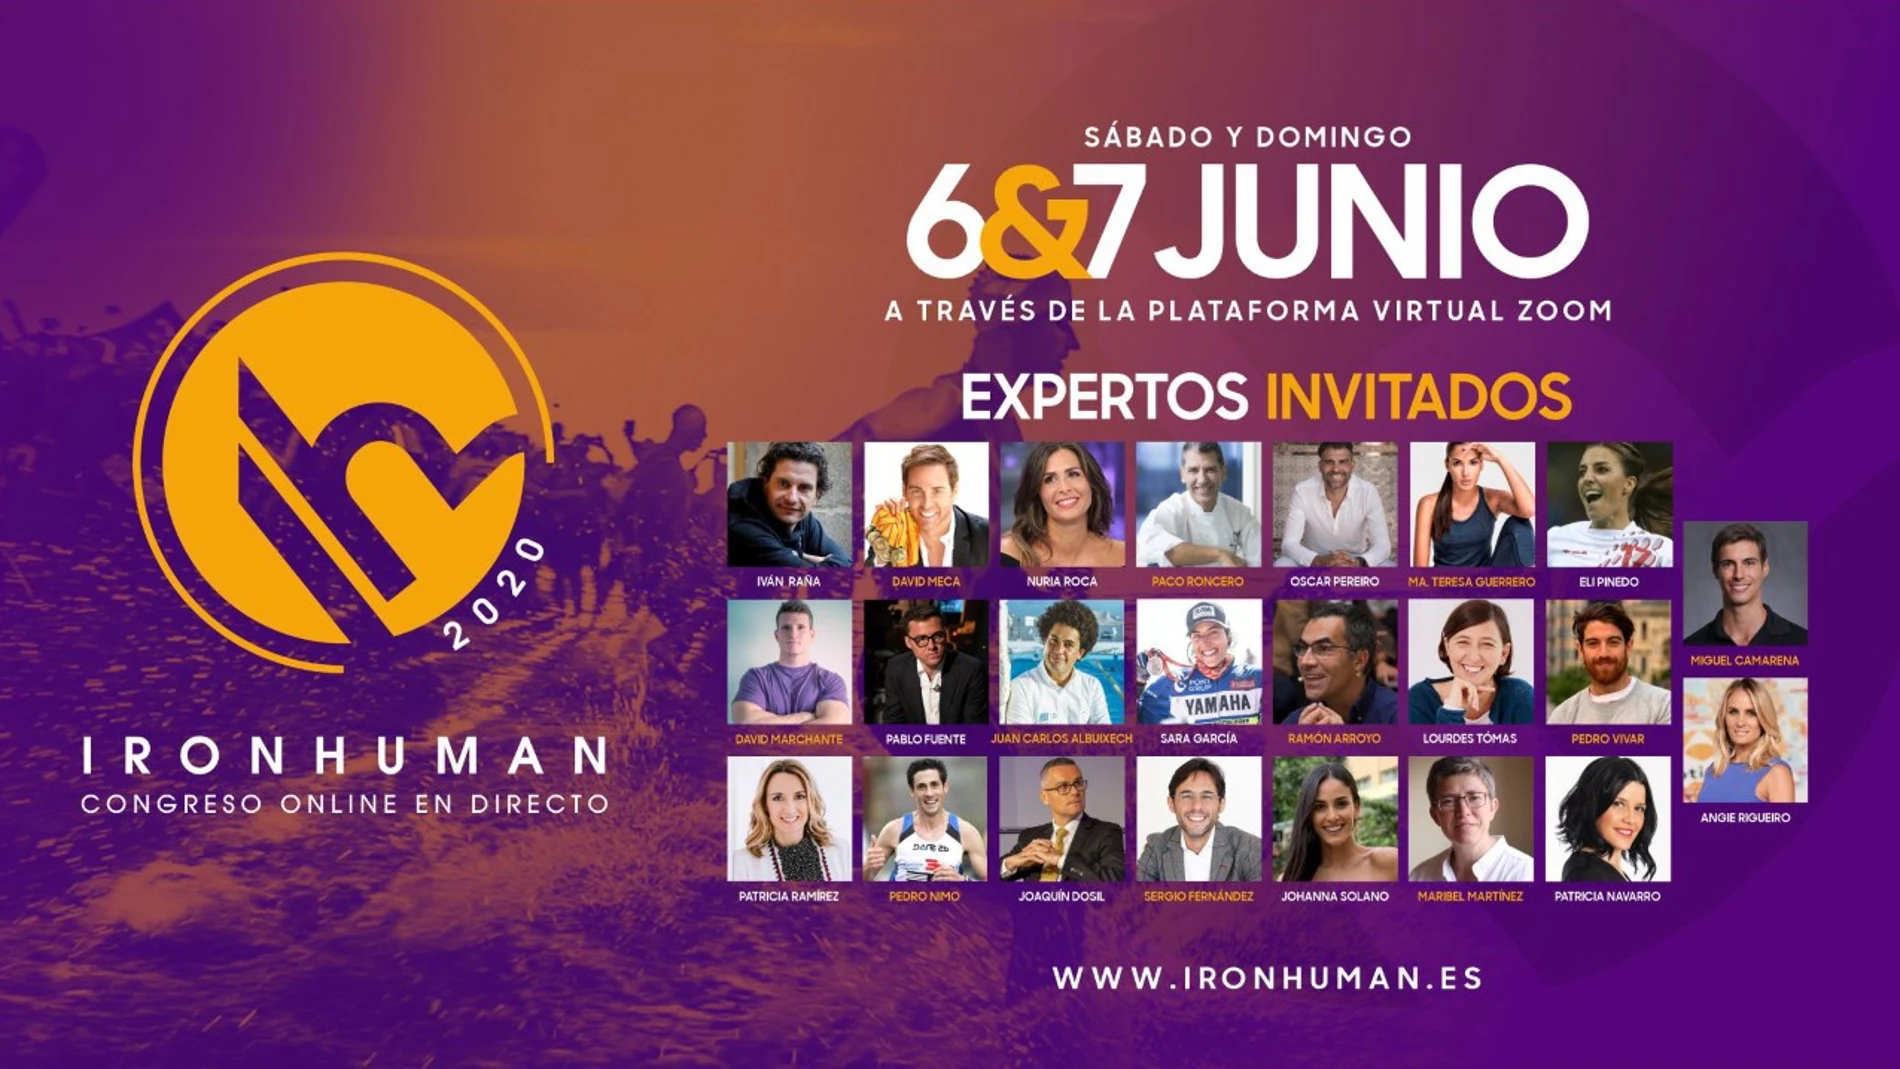 El congreso Ironhuman se celebra el 6 y el 7 de junio